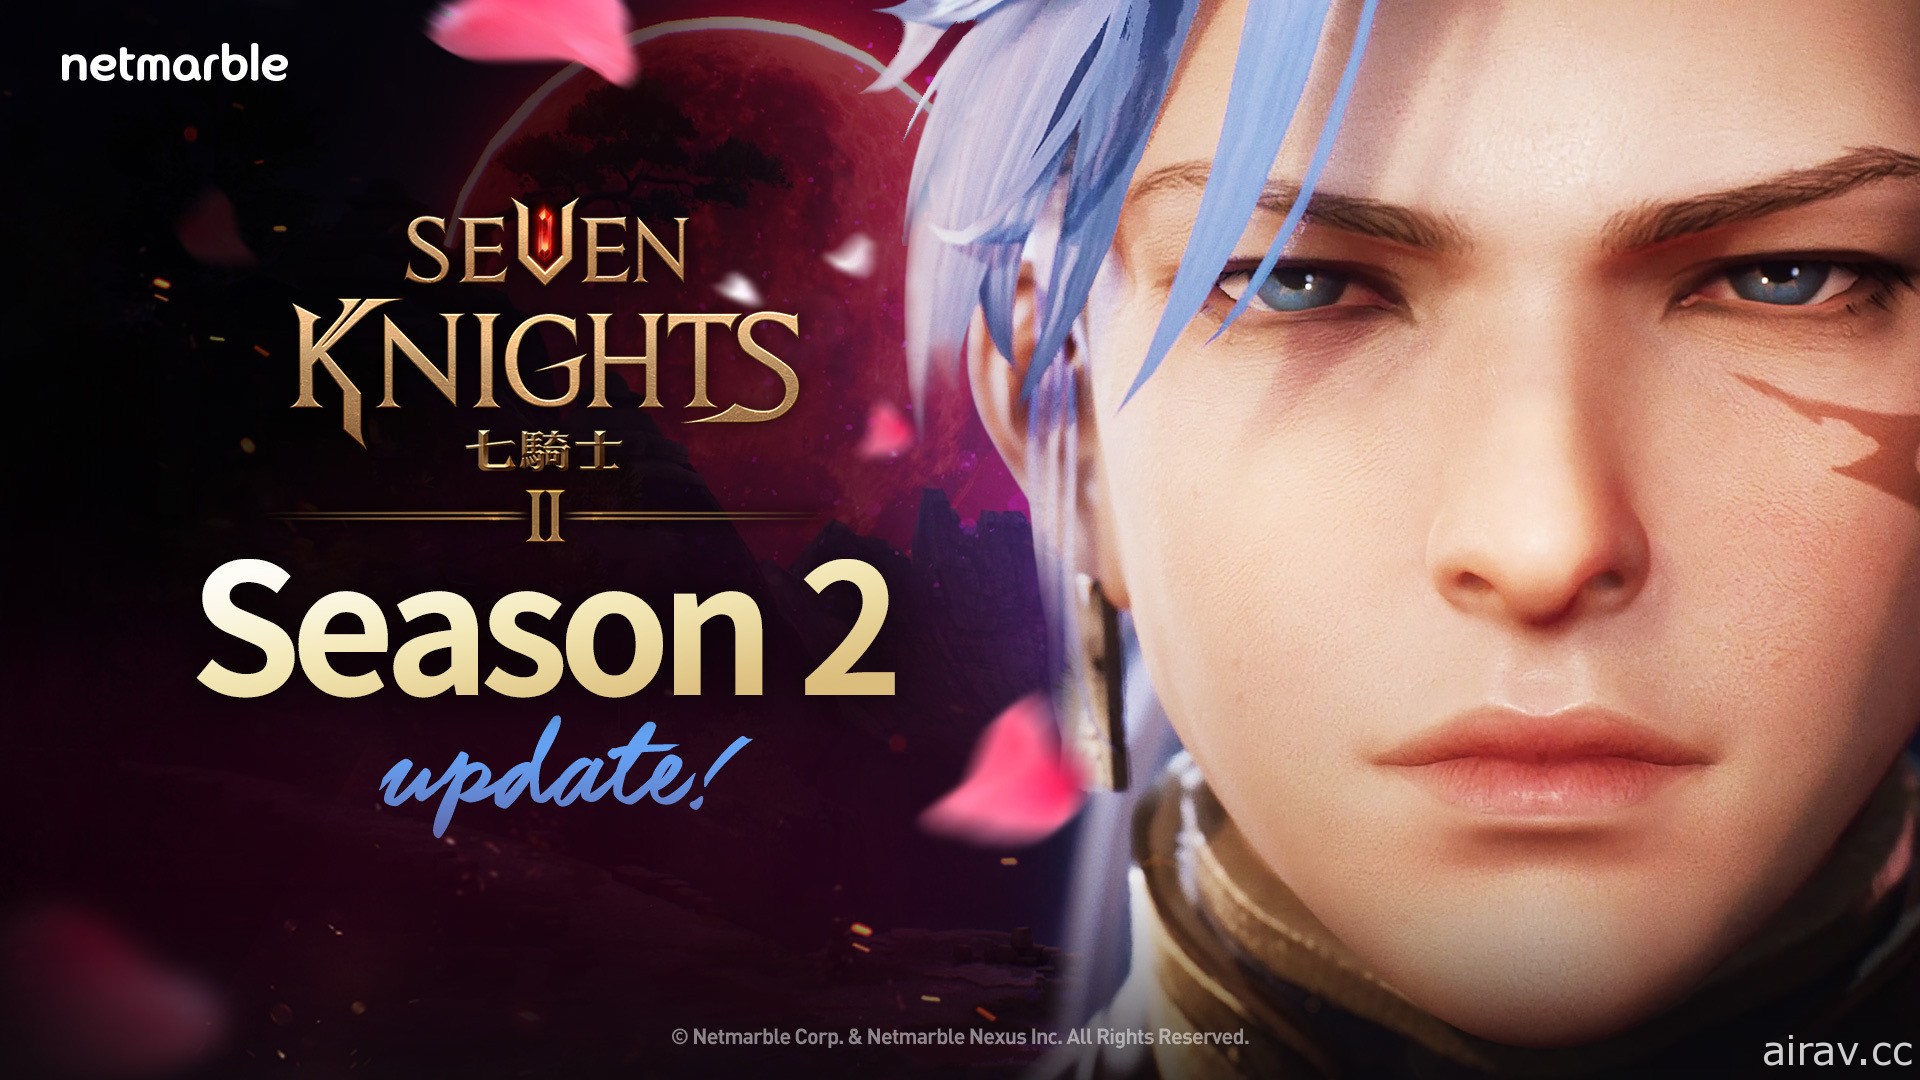 《七騎士 2》開啟第 2 季 全新遊戲內容與活動同步推出